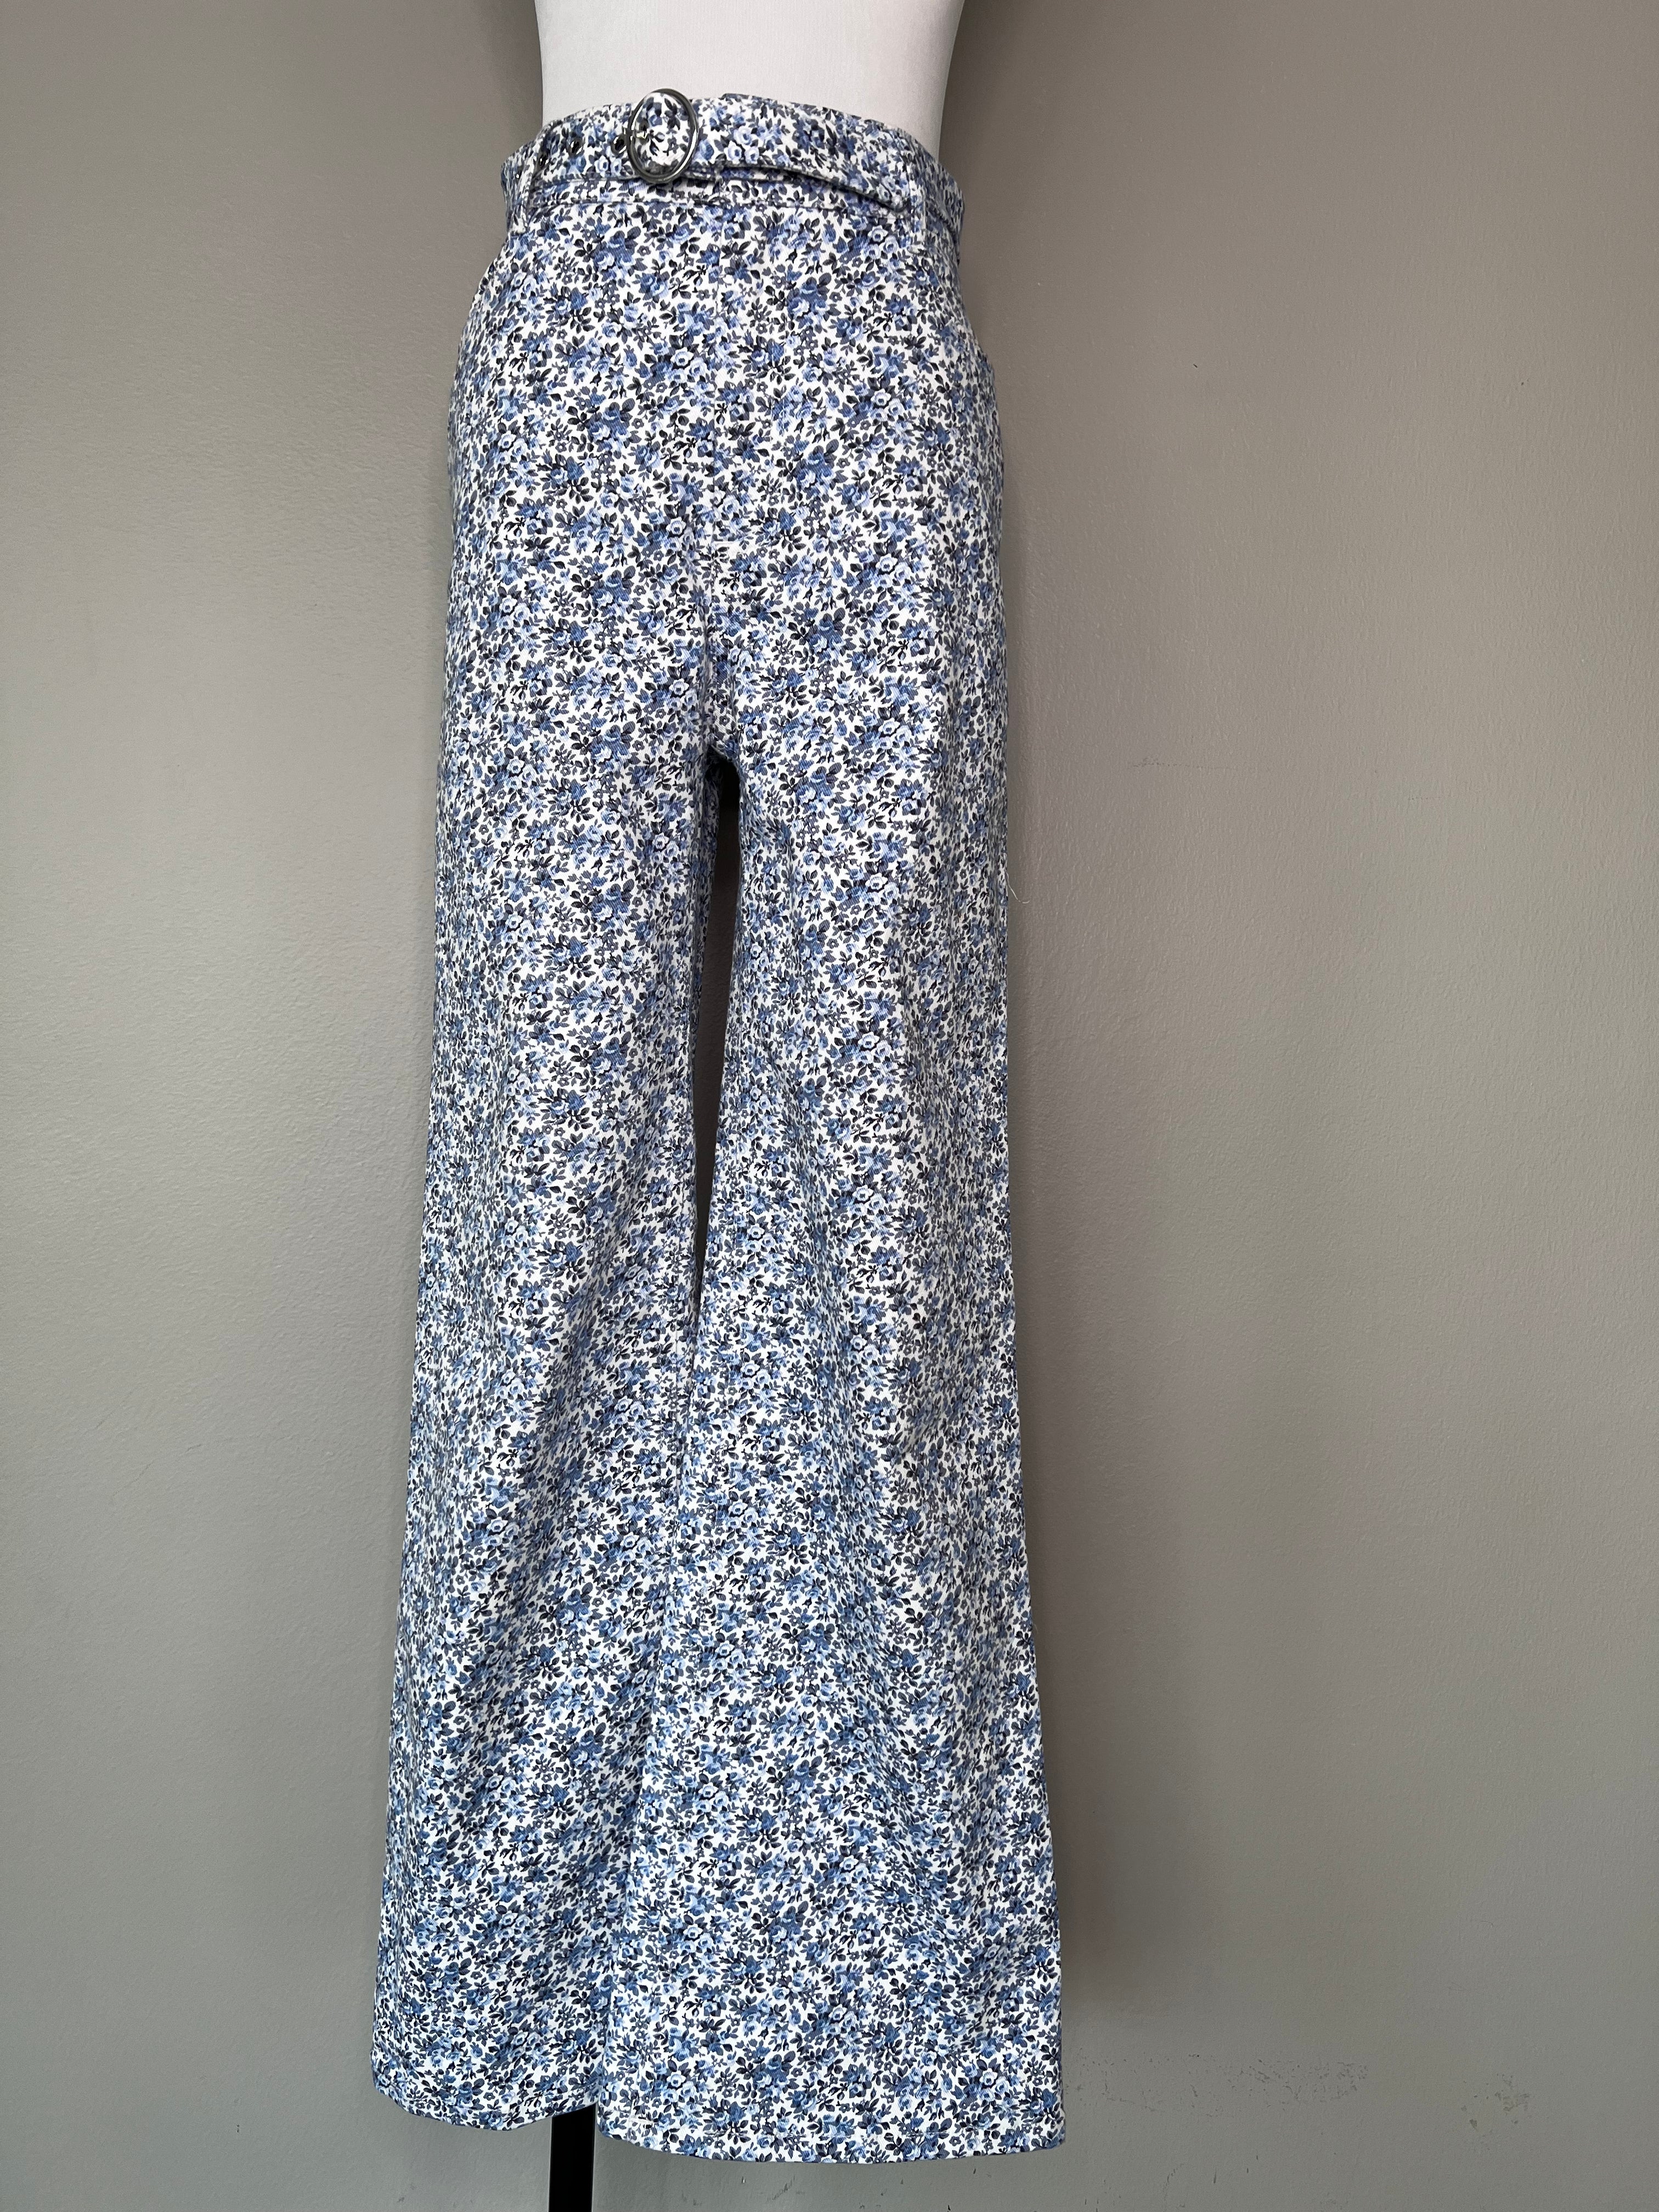 Floral white blue print pants - PARIS ATELIER